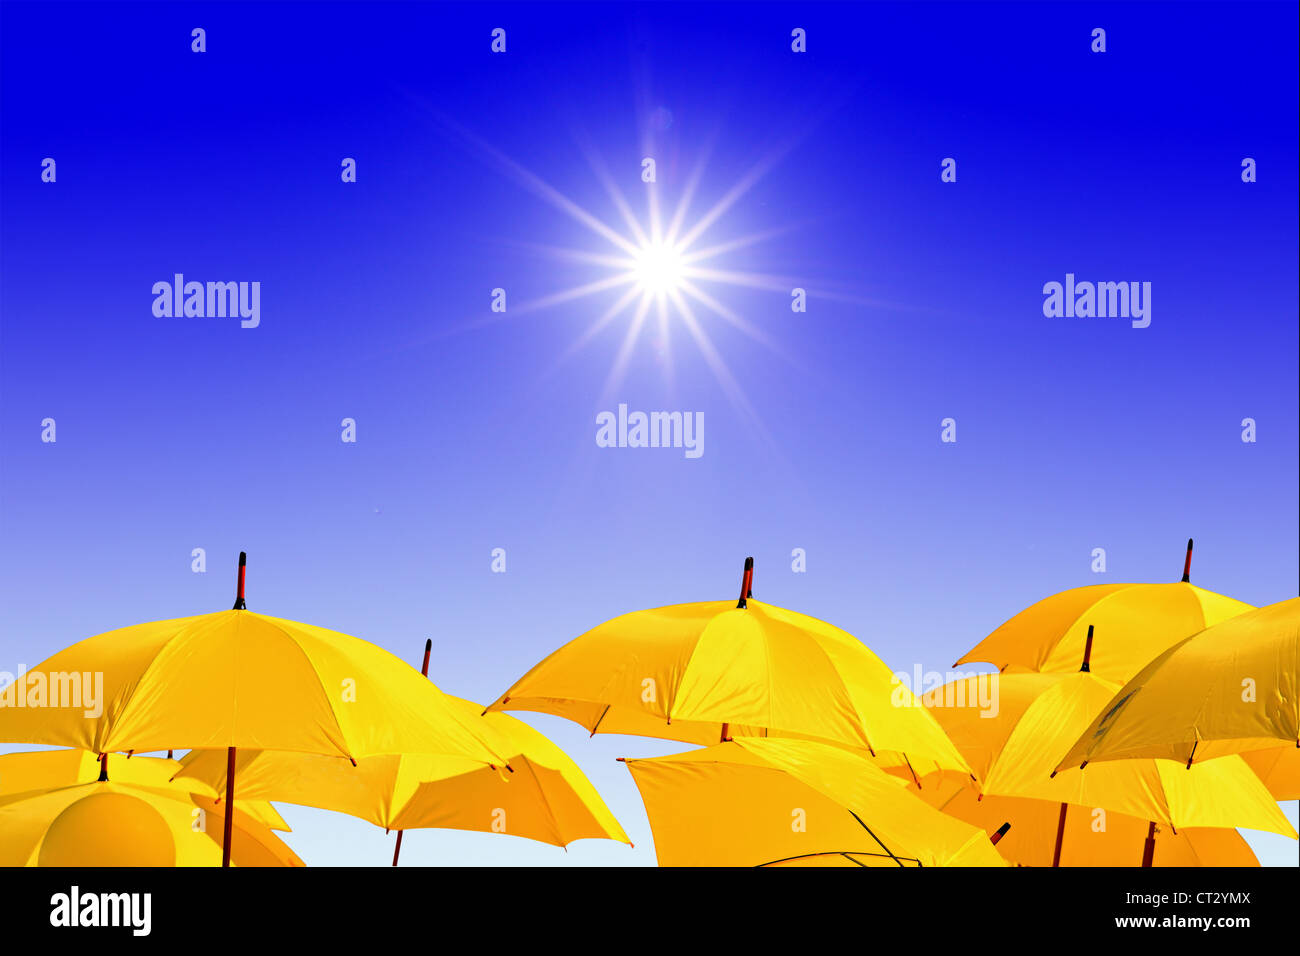 Gli ombrelli di colore giallo su sfondo celeste Foto Stock